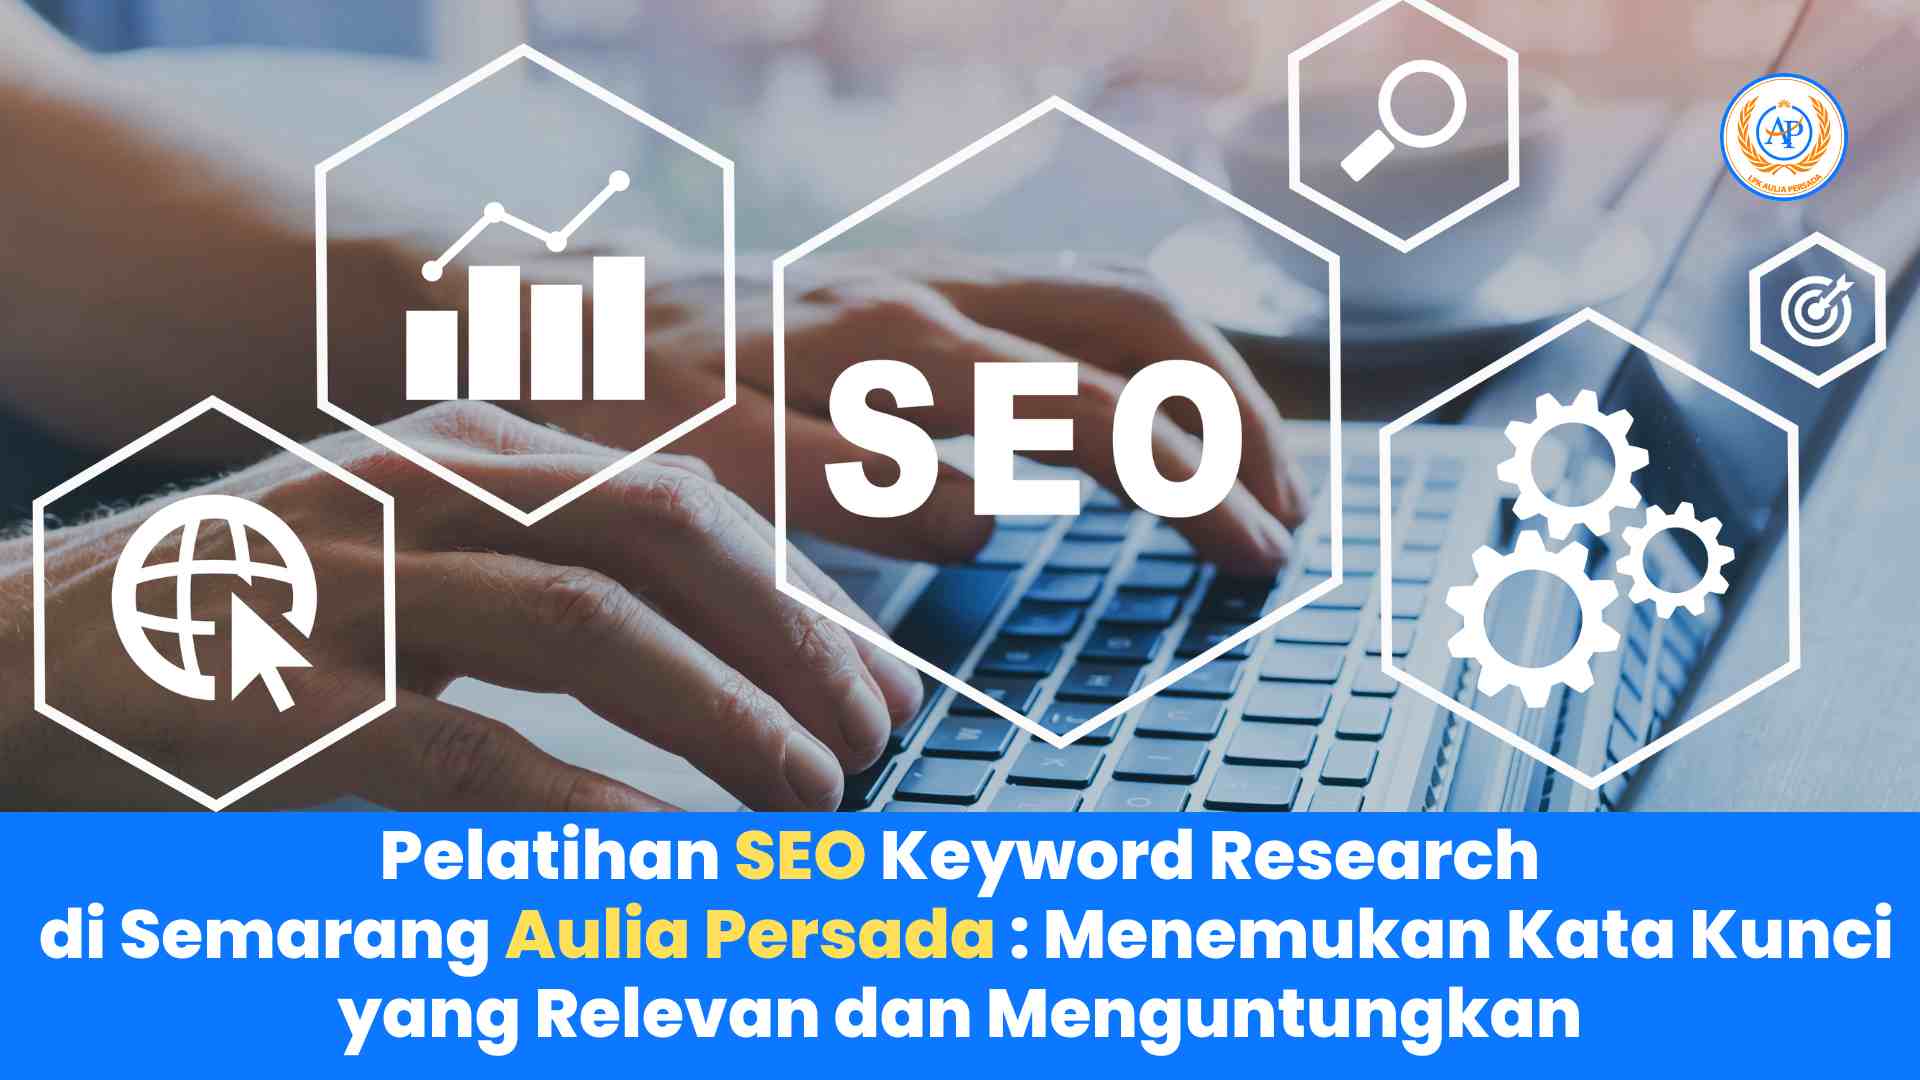 Pelatihan SEO Keyword Research di Semarang Aulia Persada: Menemukan Kata Kunci yang Relevan dan Menguntungkan